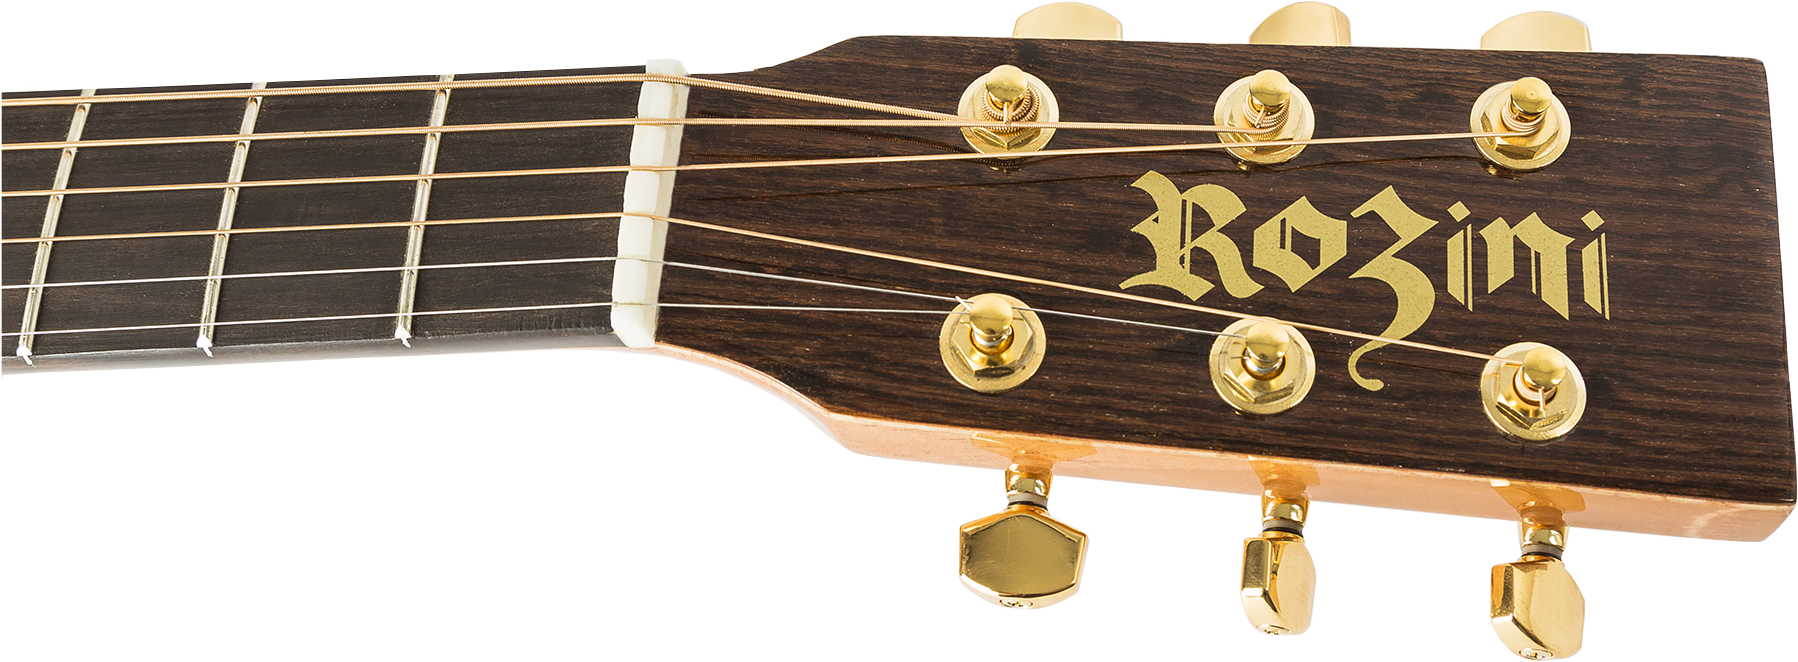 Acoustic Guitar Premium Mini - Rozini, Hd Png Download